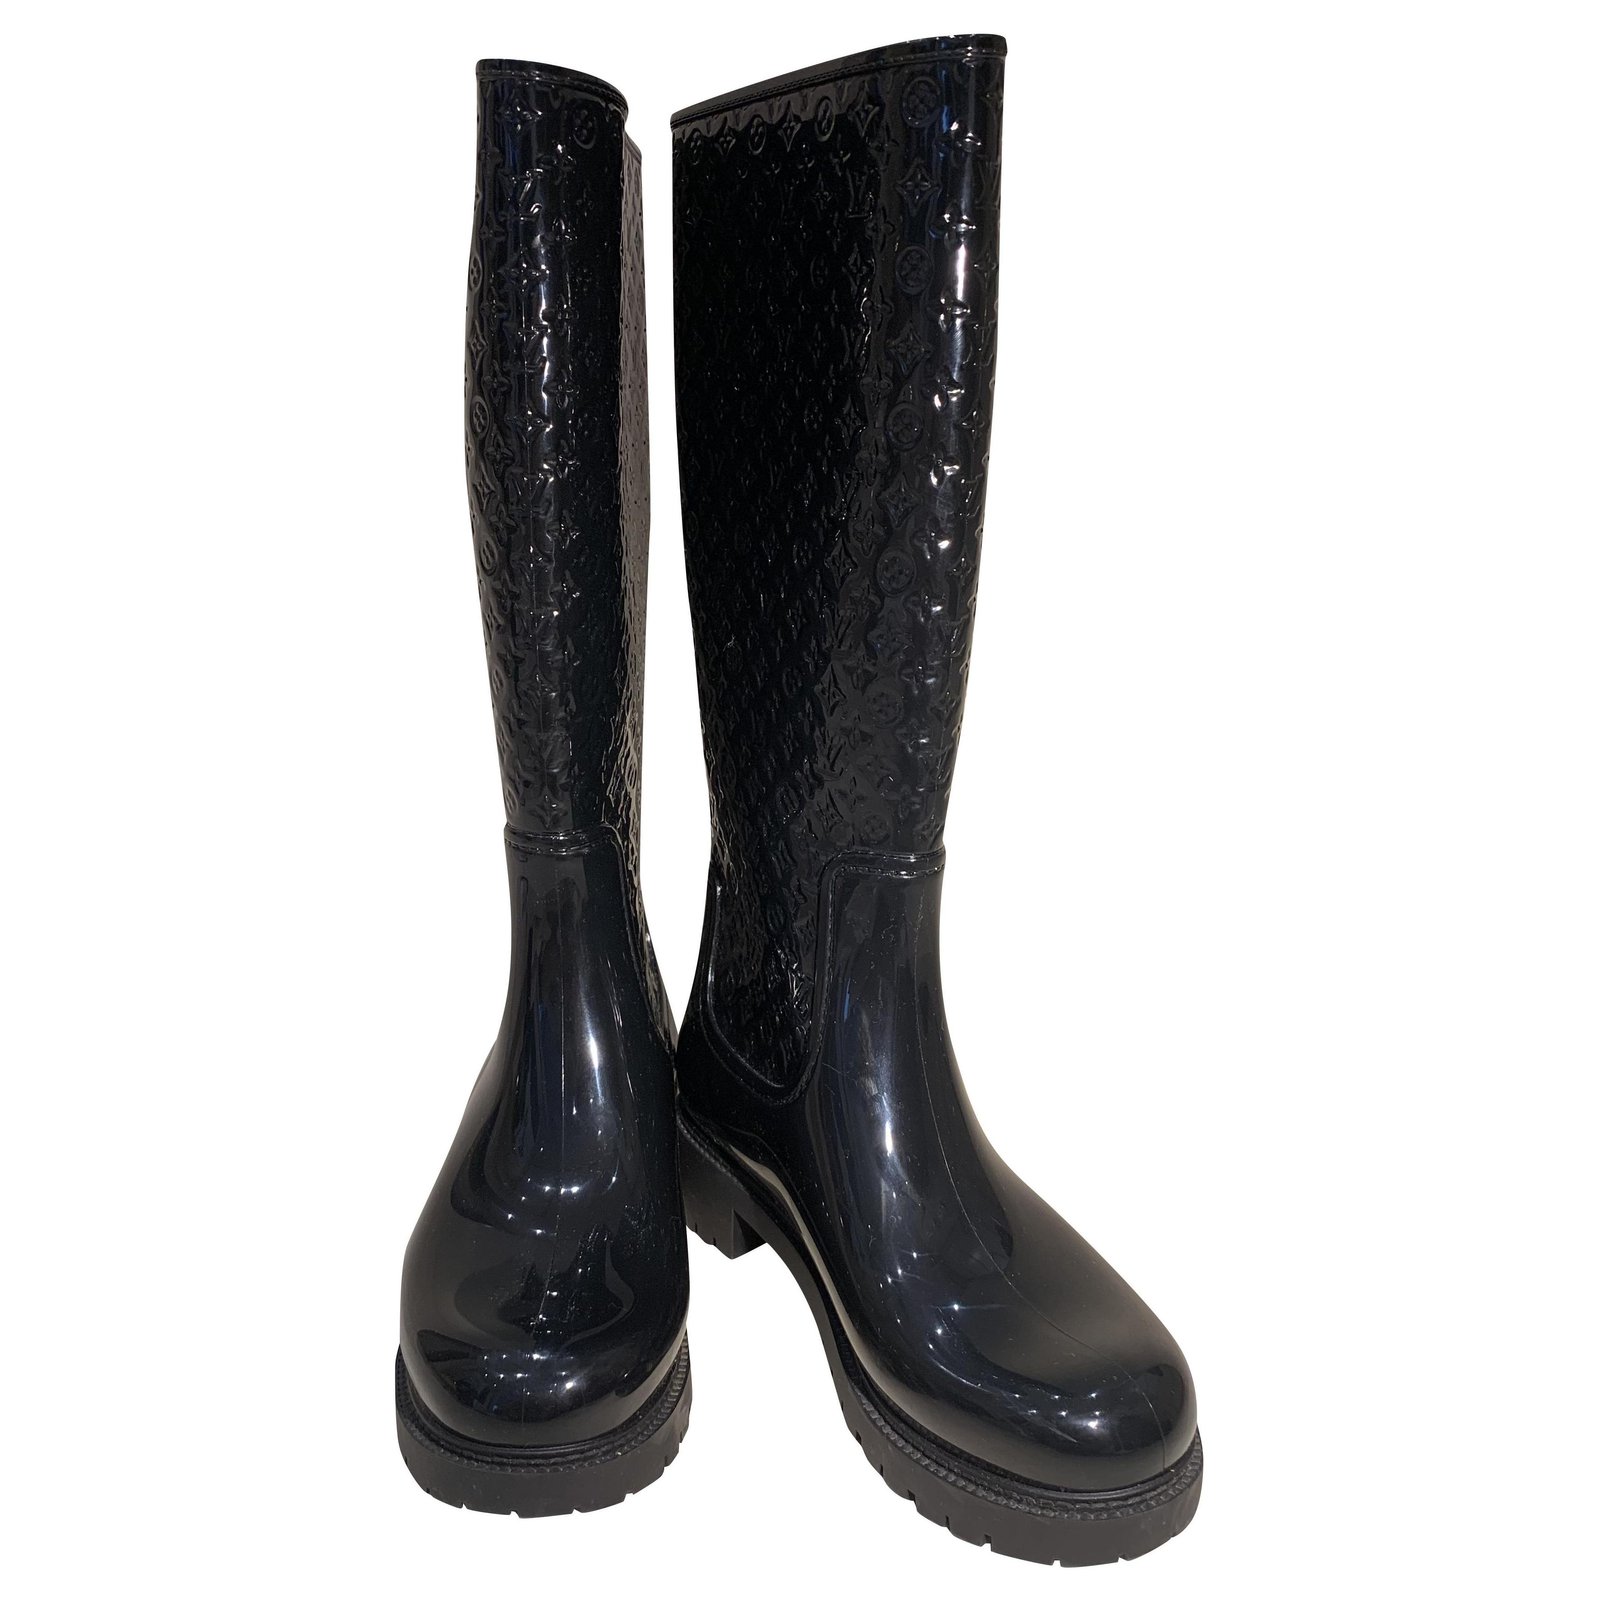 Drops wellington boots Louis Vuitton Black size 38 EU in Rubber - 33412064